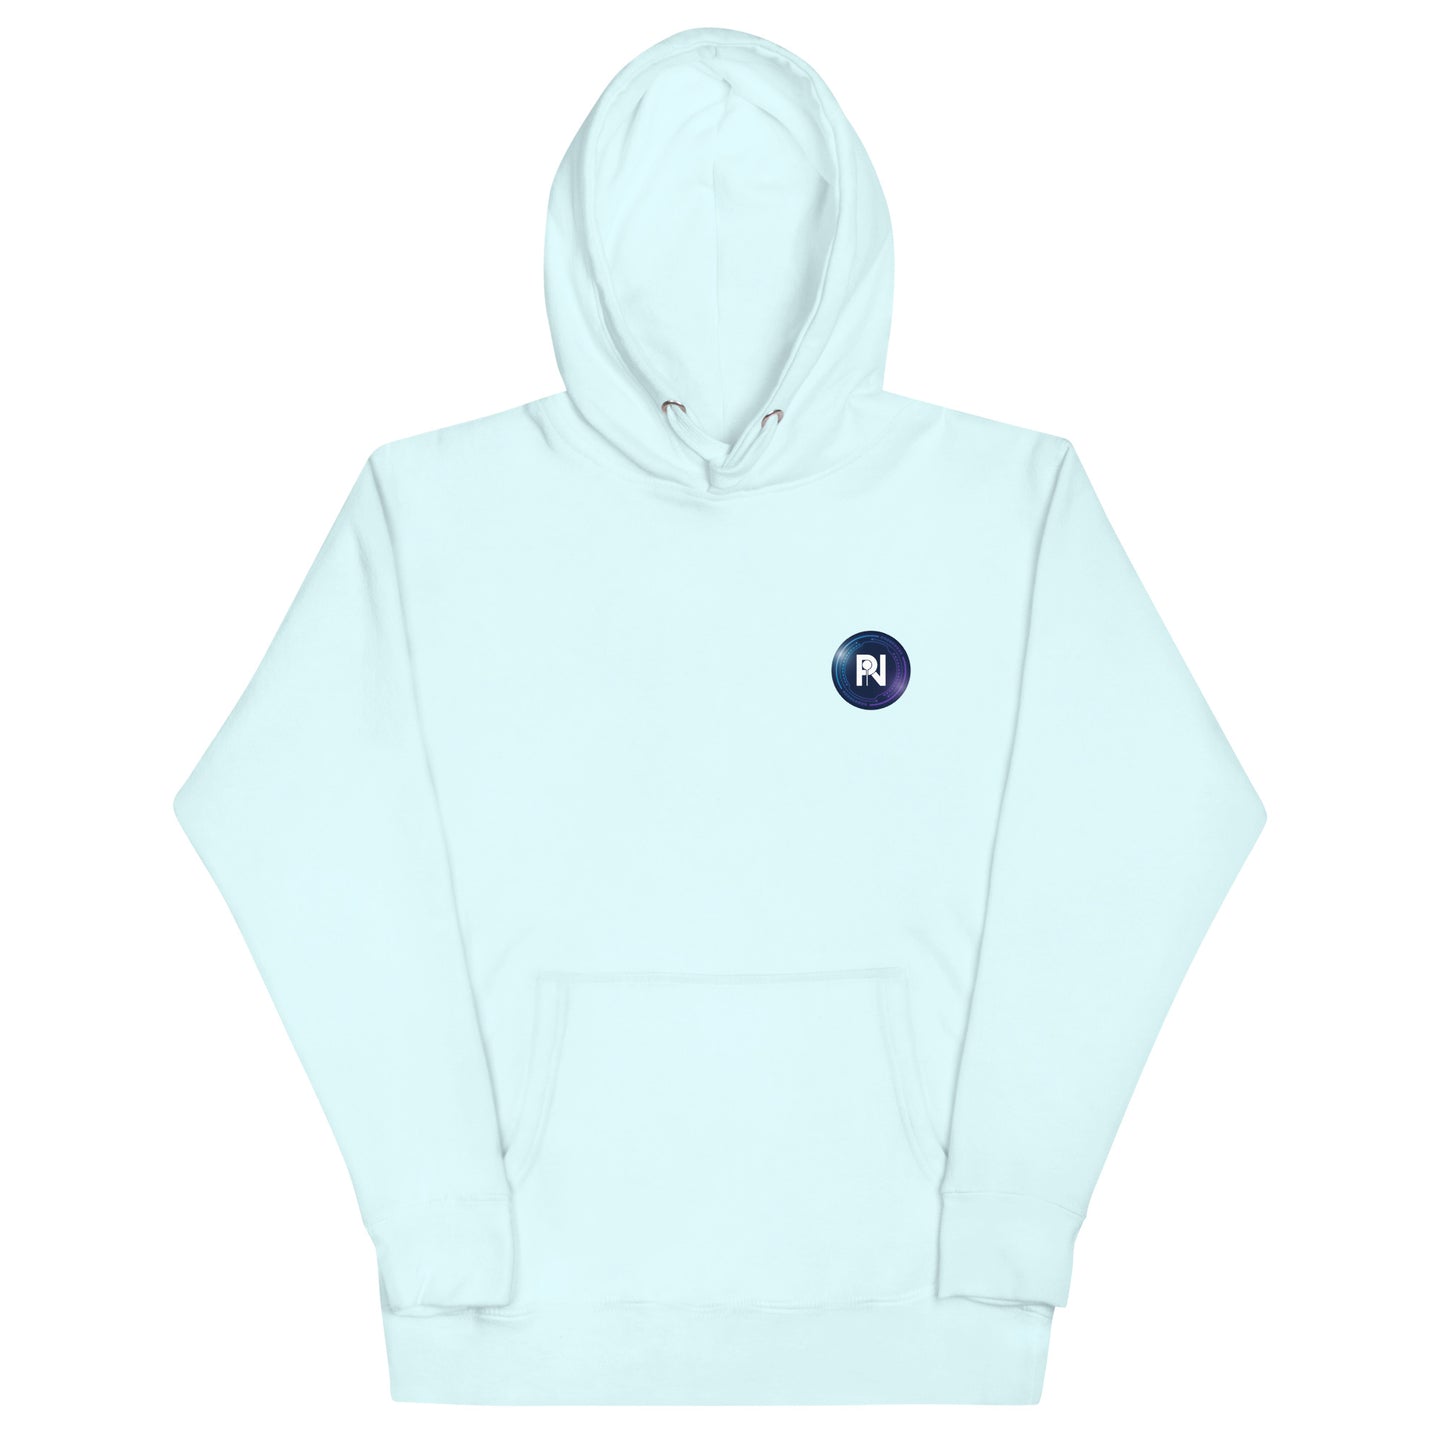 Unisex company logo hoodie